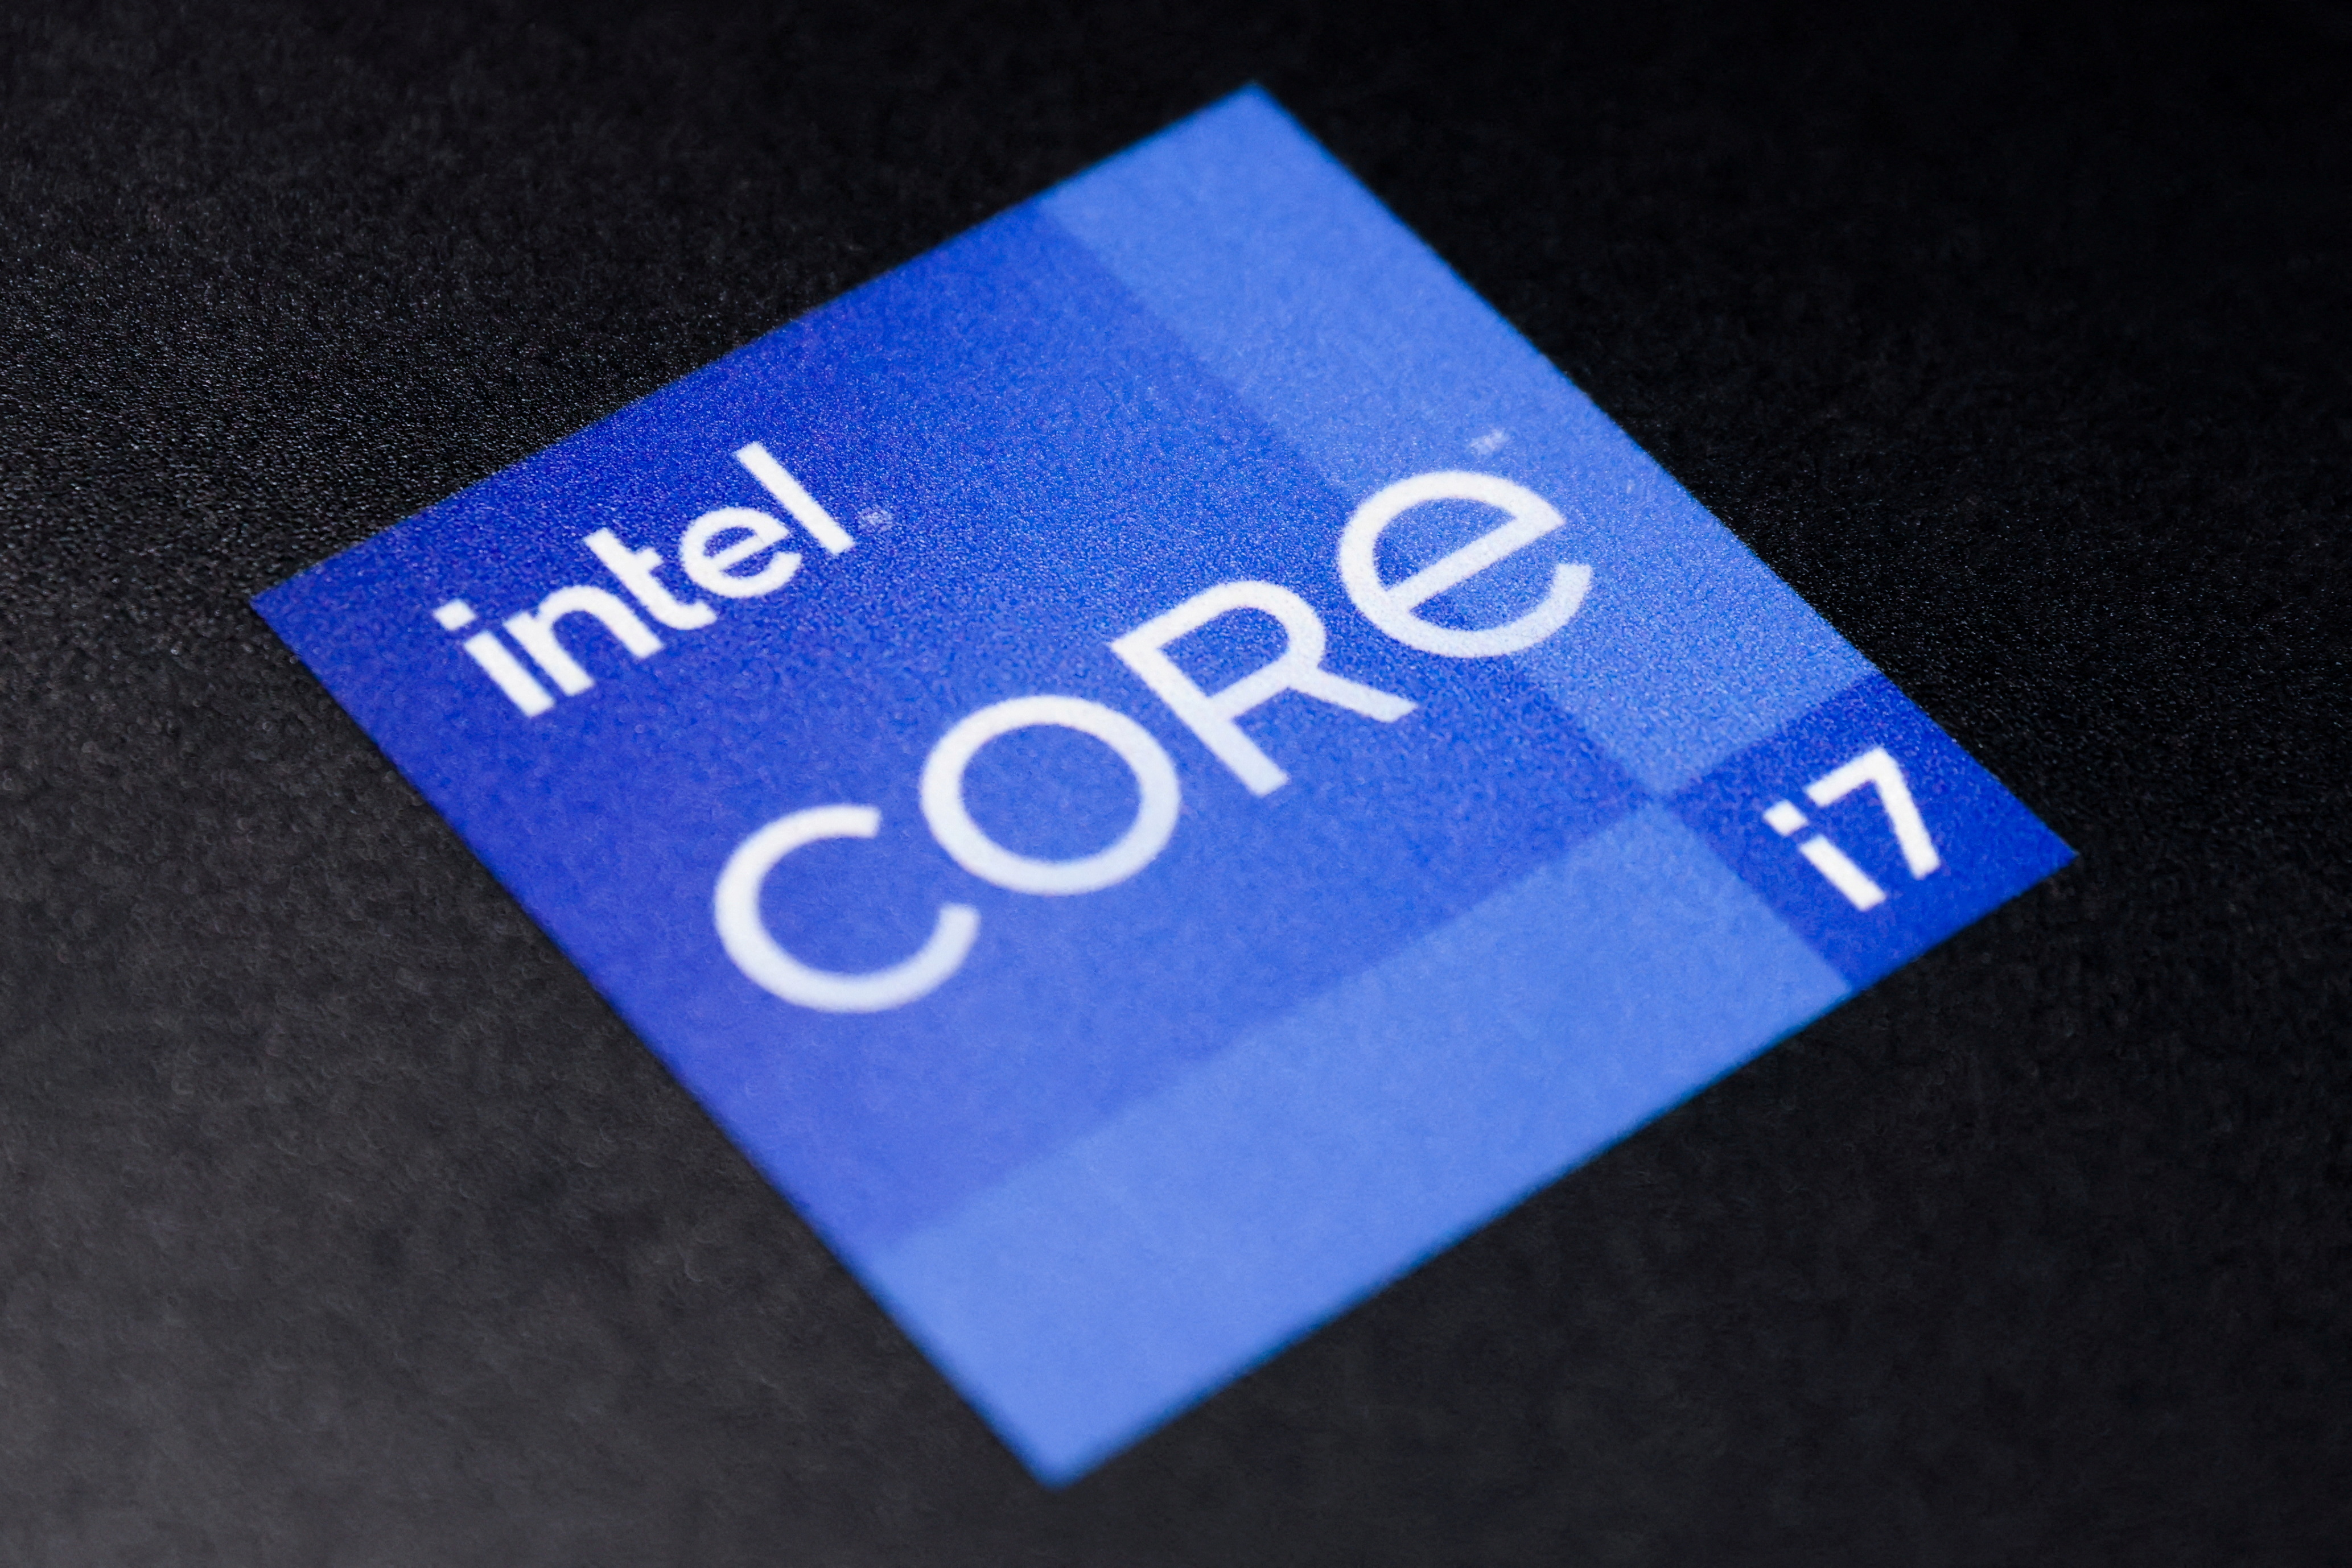 Логотип корпорации Intel можно увидеть на витрине магазина в Манхэттене, штат Нью-Йорк, 24 ноября 2021 года. REUTERS/Эндрю Келли